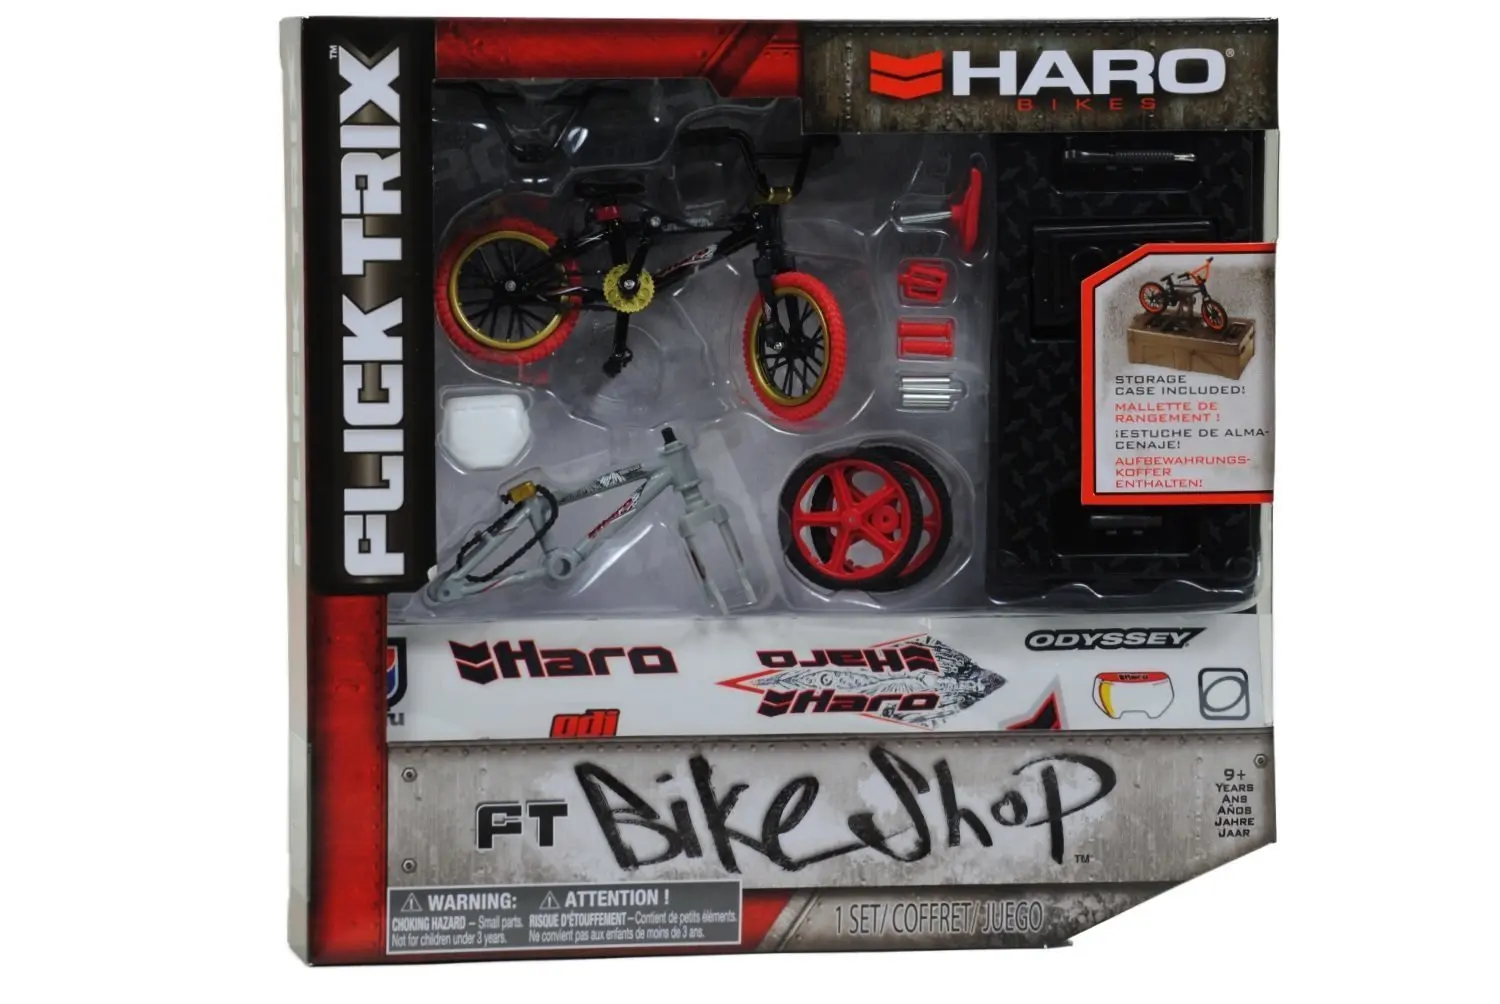 flick trix bike shop